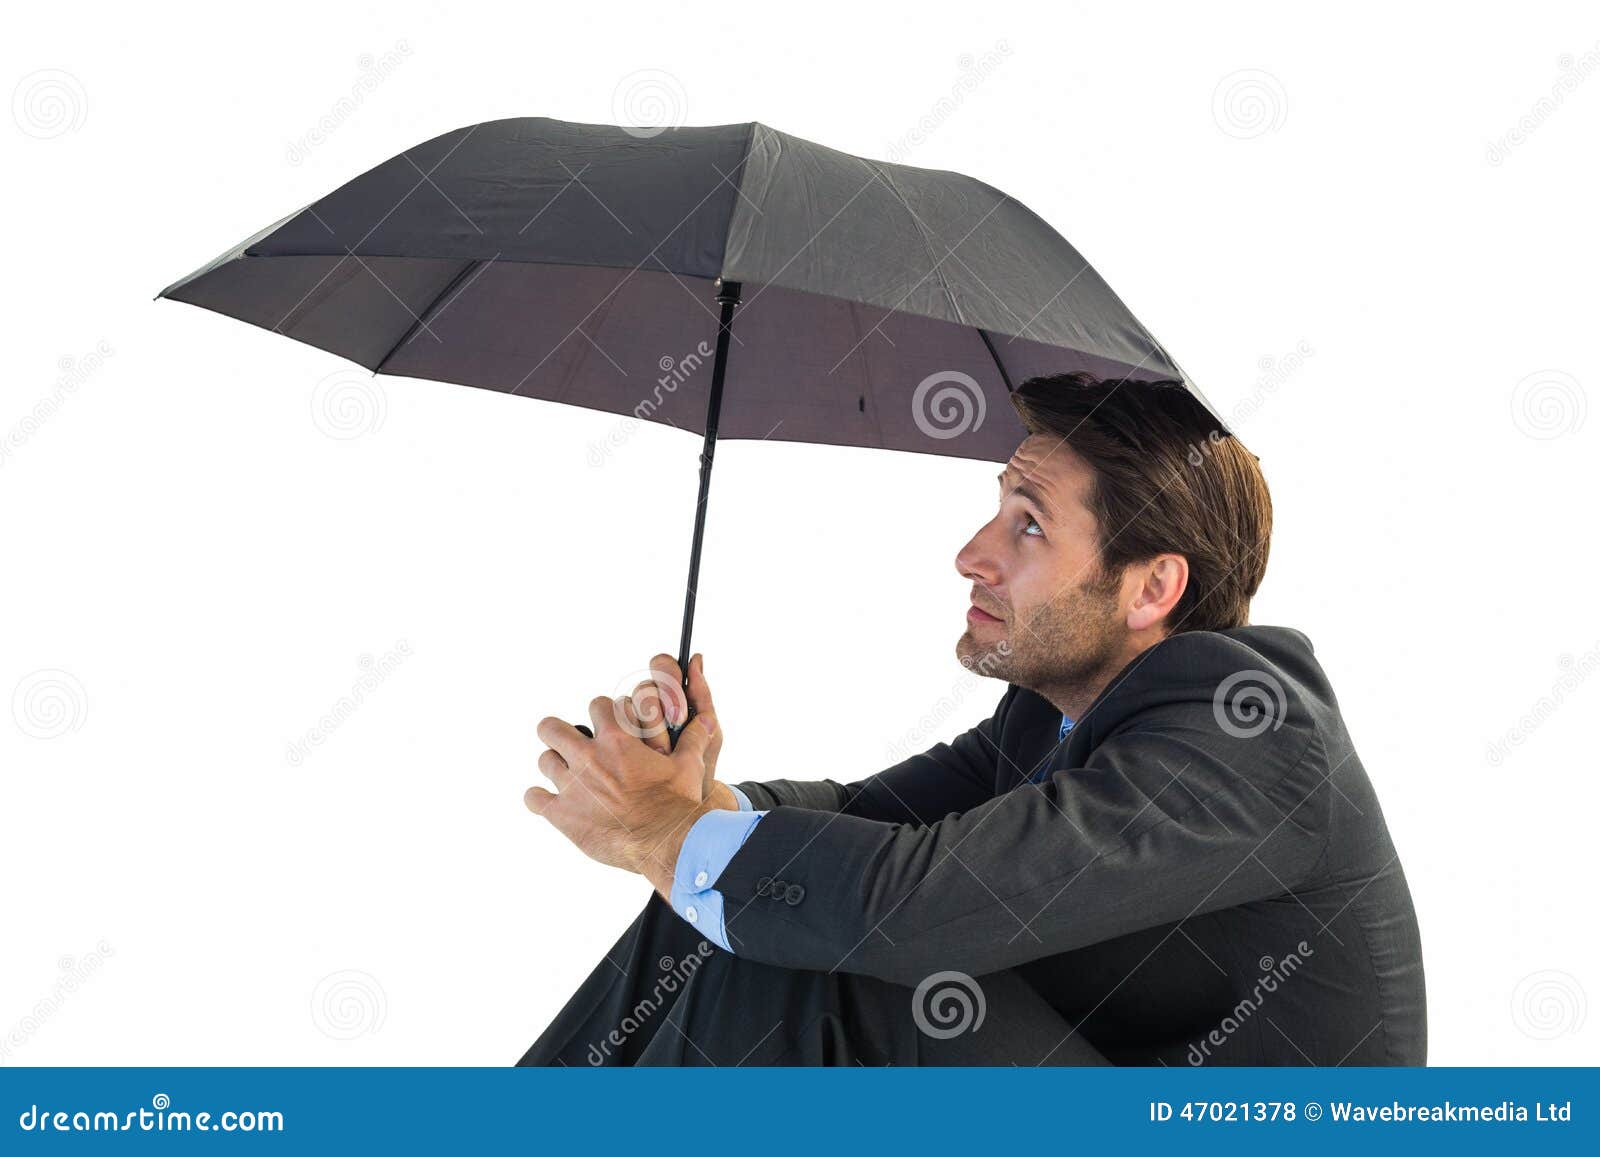 Зонтик сидит. Человек сидит с зонтом. Человек с зонтом боком. Человек держит зонт. Зонт боком.